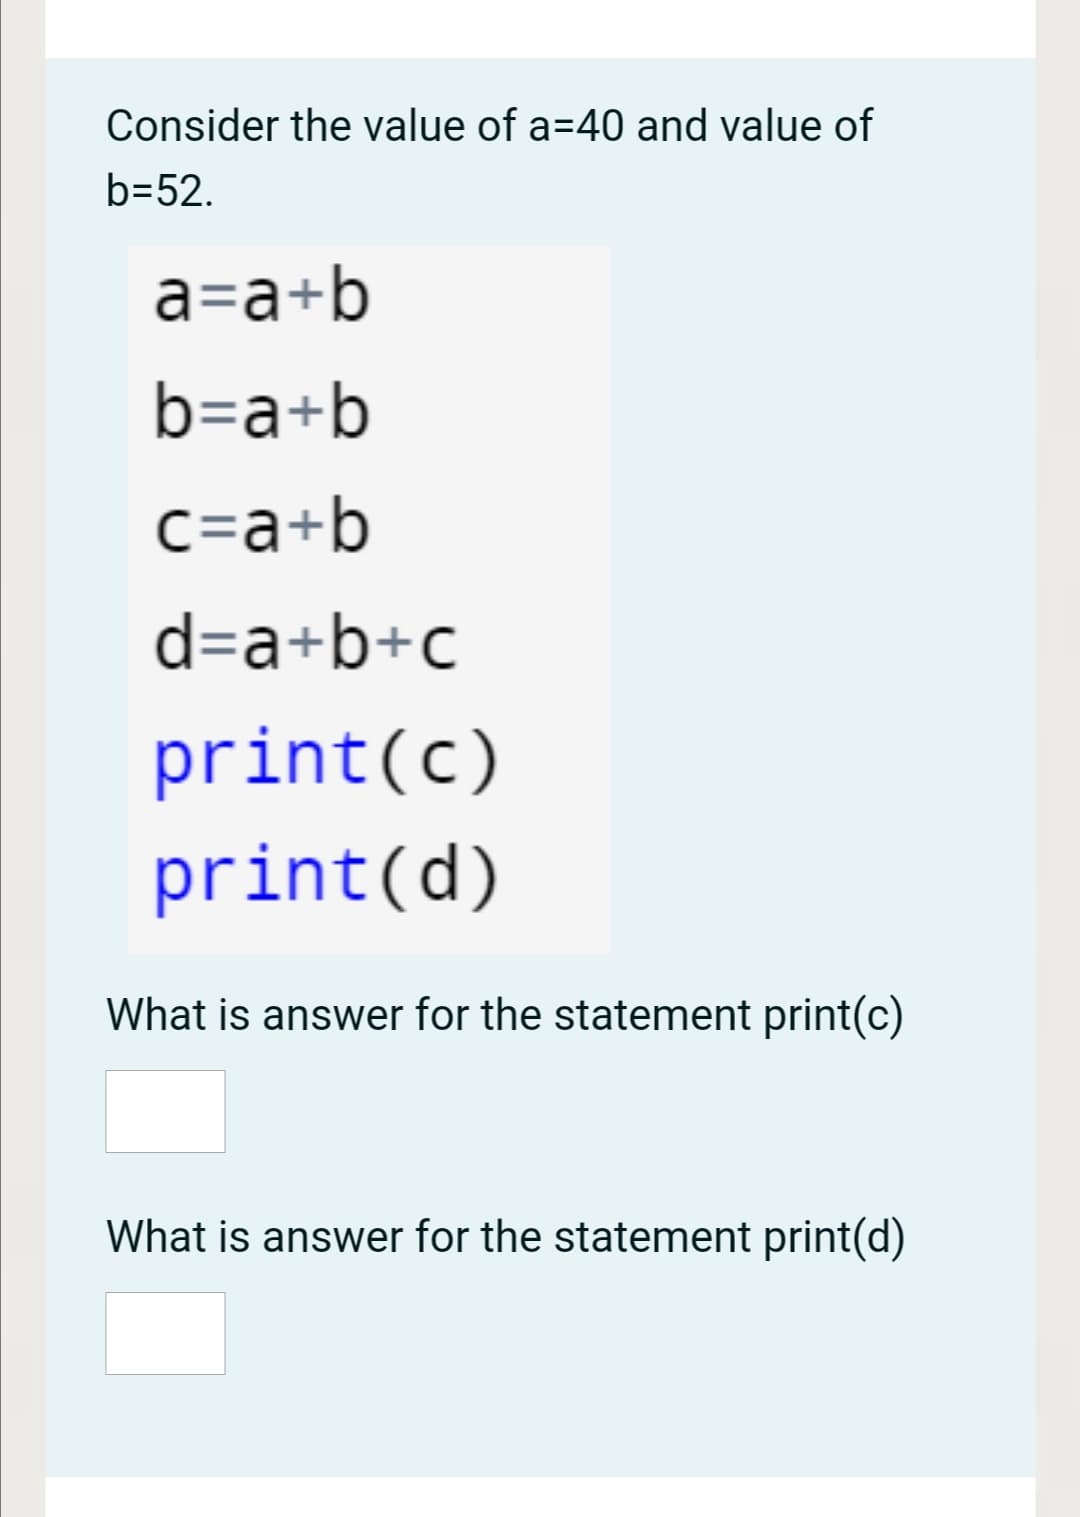 Consider the value of a=40 and value of
b=52.
a=a+b
b=a+b
C=a+b
d=a+b+c
print(c)
print(d)
What is answer for the statement print(c)
What is answer for the statement print(d)
